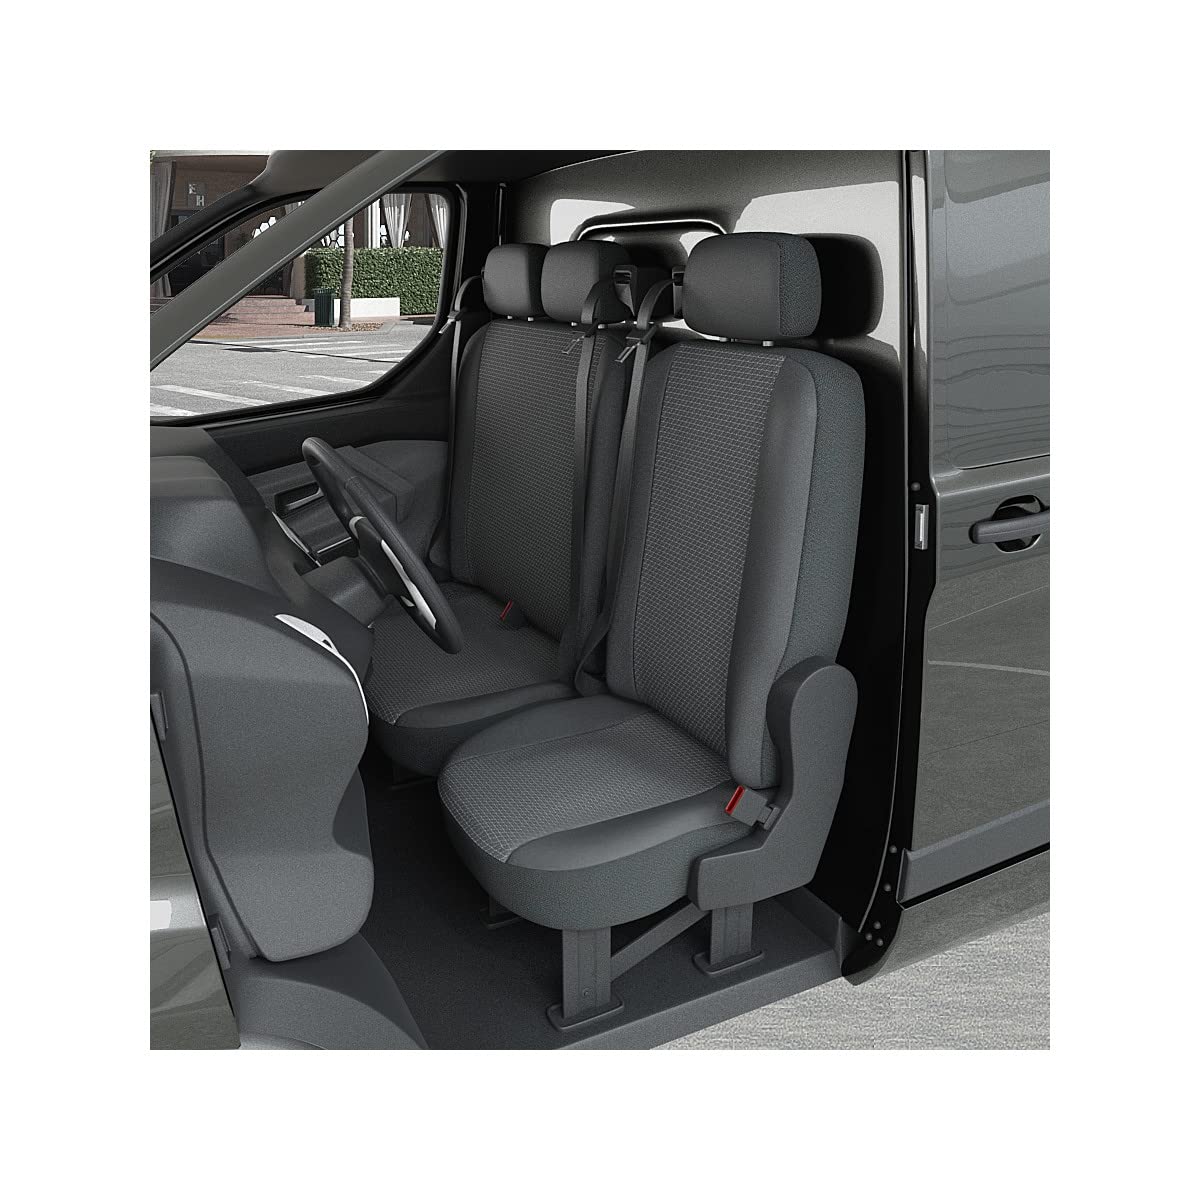 DBS 1013176 Sitzbezug für Auto/Nutzfahrzeuge, Kunstleder, schnelle Montage, kompatibel mit Airbag-Isofix-1013176 von DBS